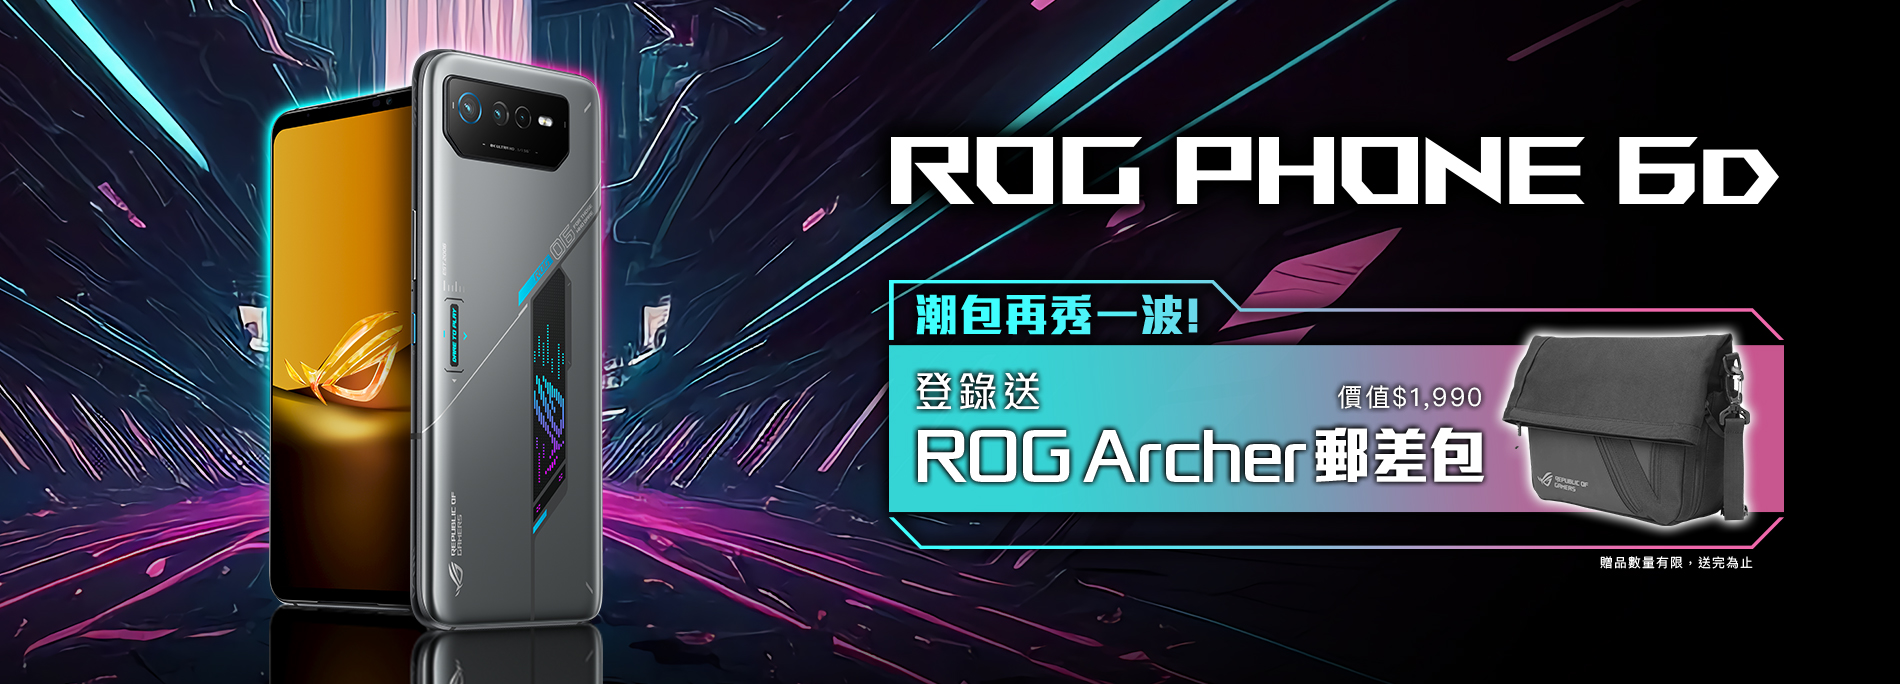 【潮包再秀一波！】買ROG Phone 6D，登錄送ROG Archer 郵差包！